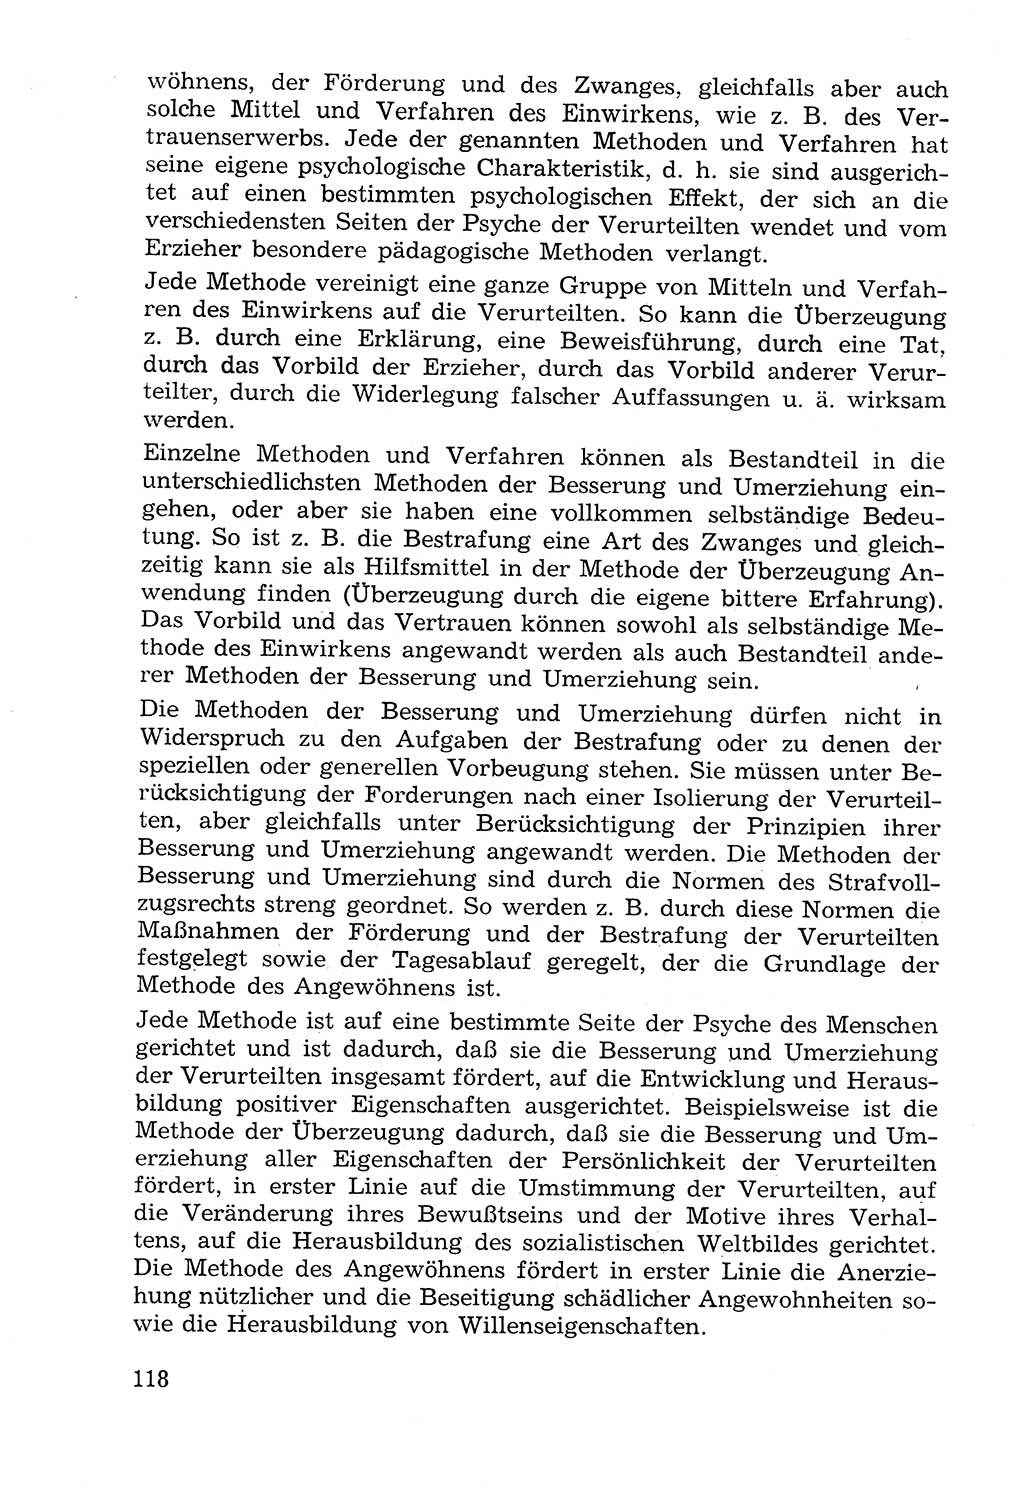 Lehrbuch der Strafvollzugspädagogik [Deutsche Demokratische Republik (DDR)] 1969, Seite 118 (Lb. SV-Pd. DDR 1969, S. 118)